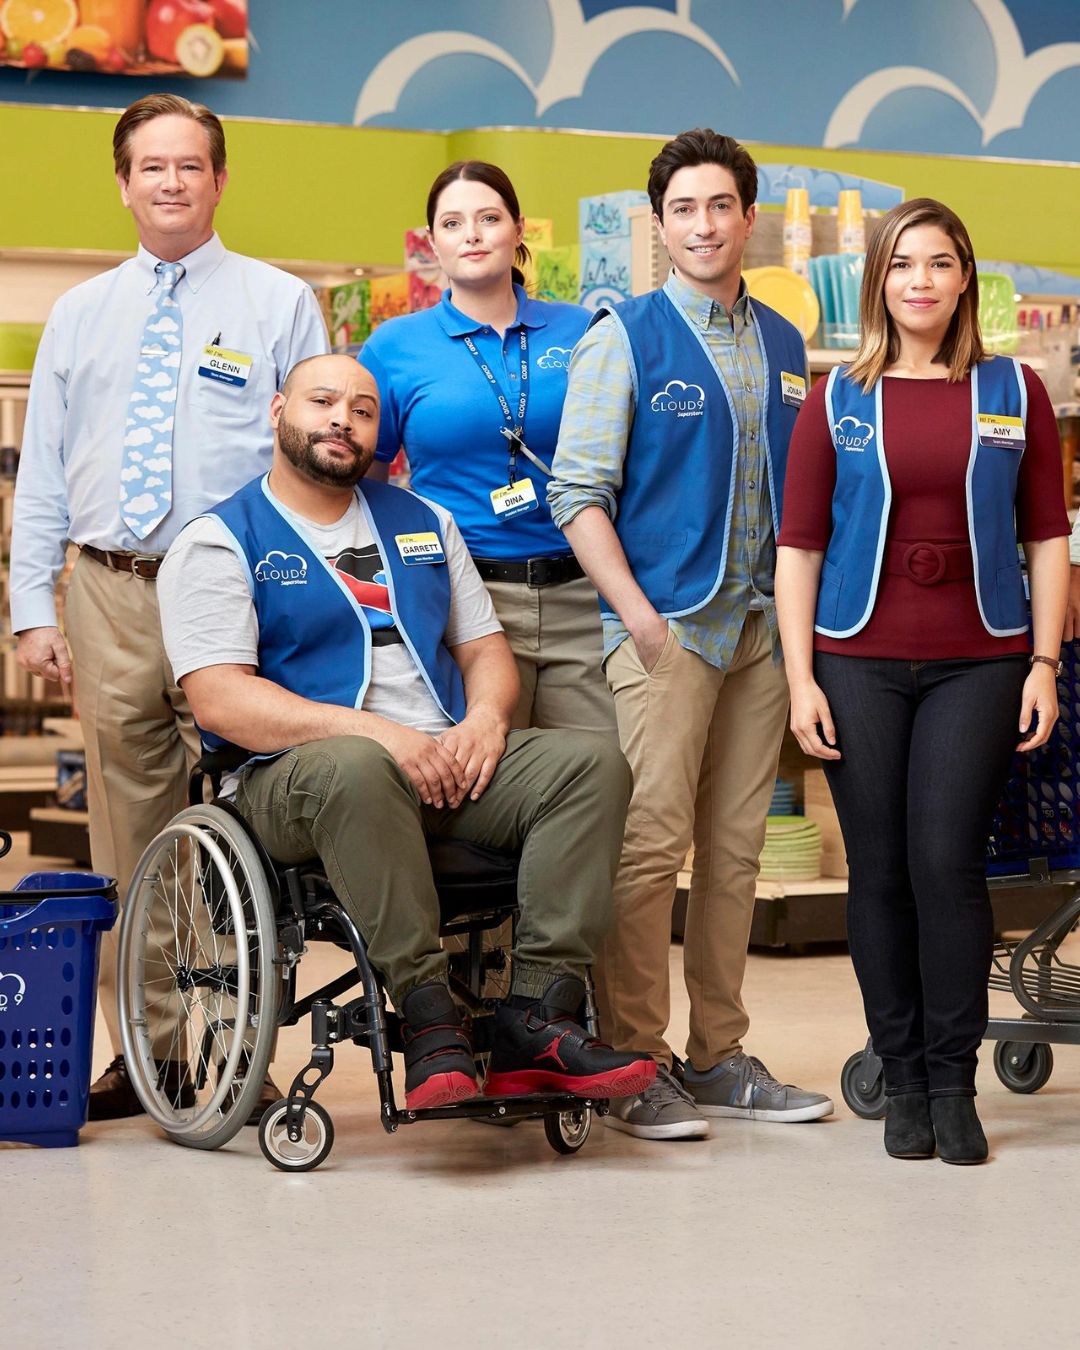 Bildet viser noen av karakterene inne i dagligvarebtuikken i serien "Superstore". 3 menn og 2 damer, kledd i blå vester. De smiler mot kamera. Karakteren Garrett i rullestol fremst i bildet.